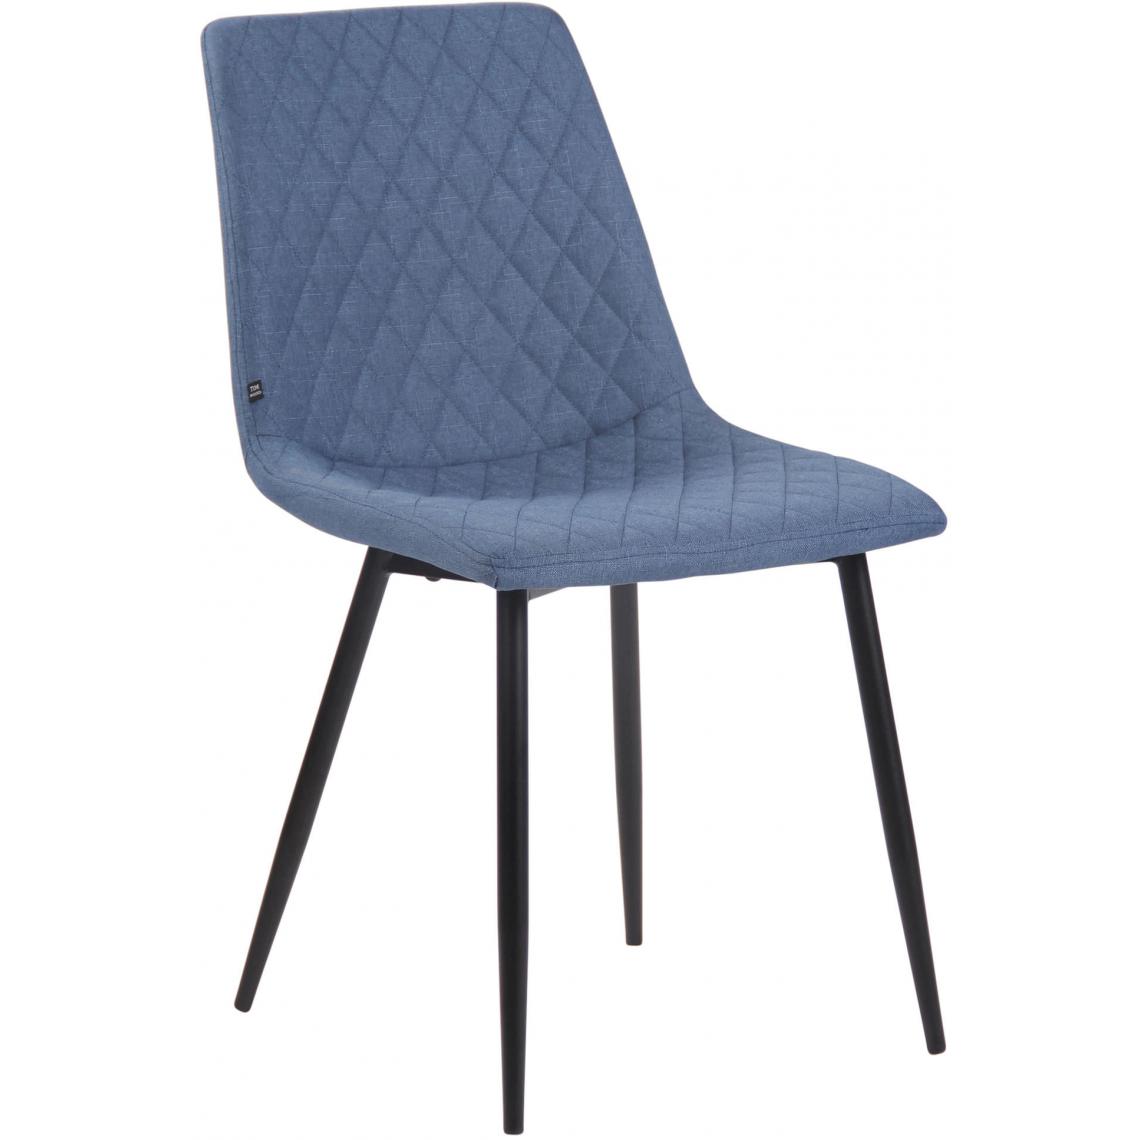 Icaverne - Chic Chaise en tissu collection Port-d’Espagne couleur bleu - Chaises